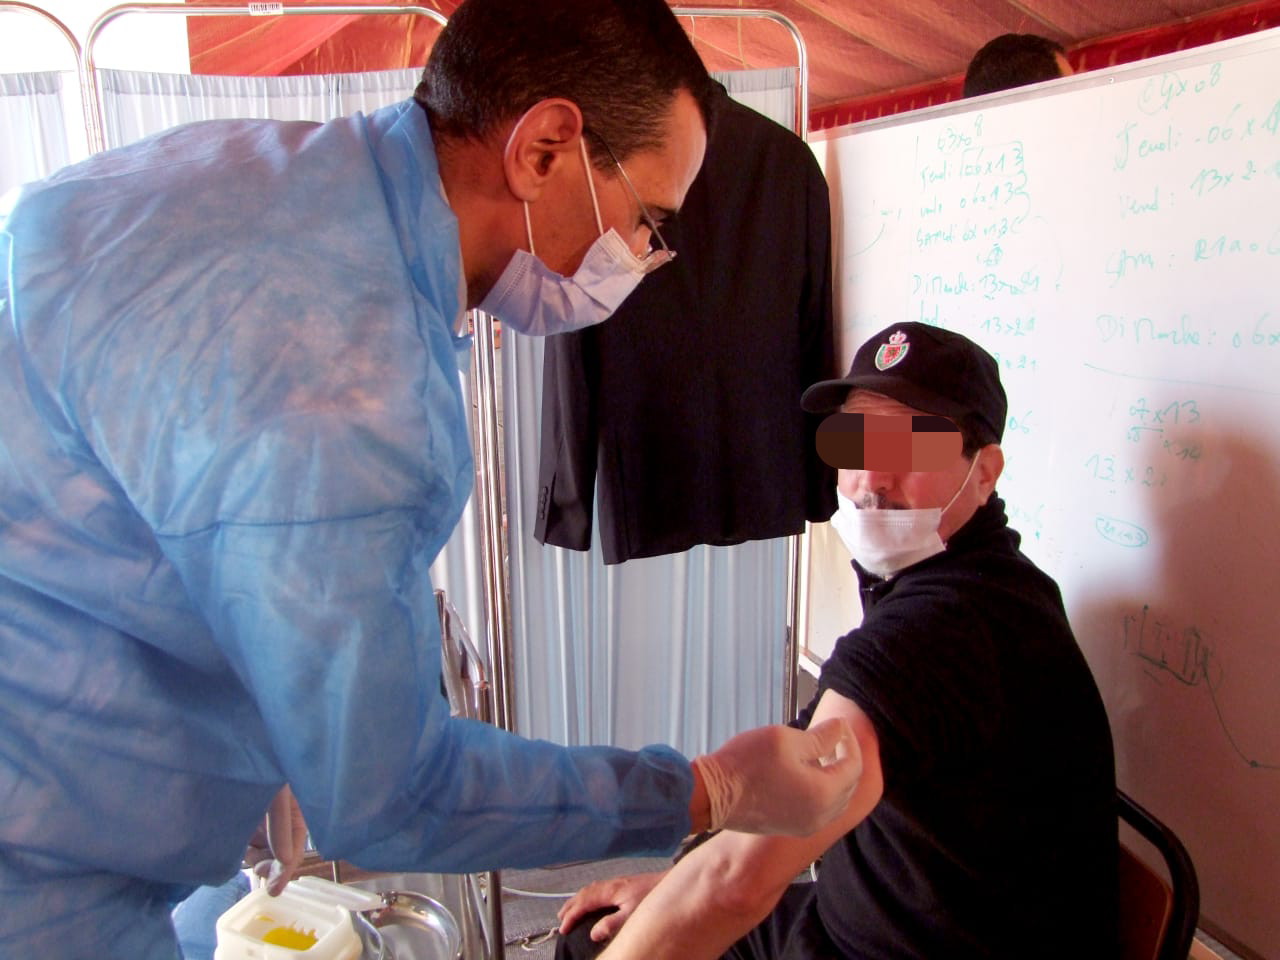 رجال ونساء الأمن بولاية أمن بني ملال يتلَقَّون جرعات اللقاح المُضاد لفيروس كورونا